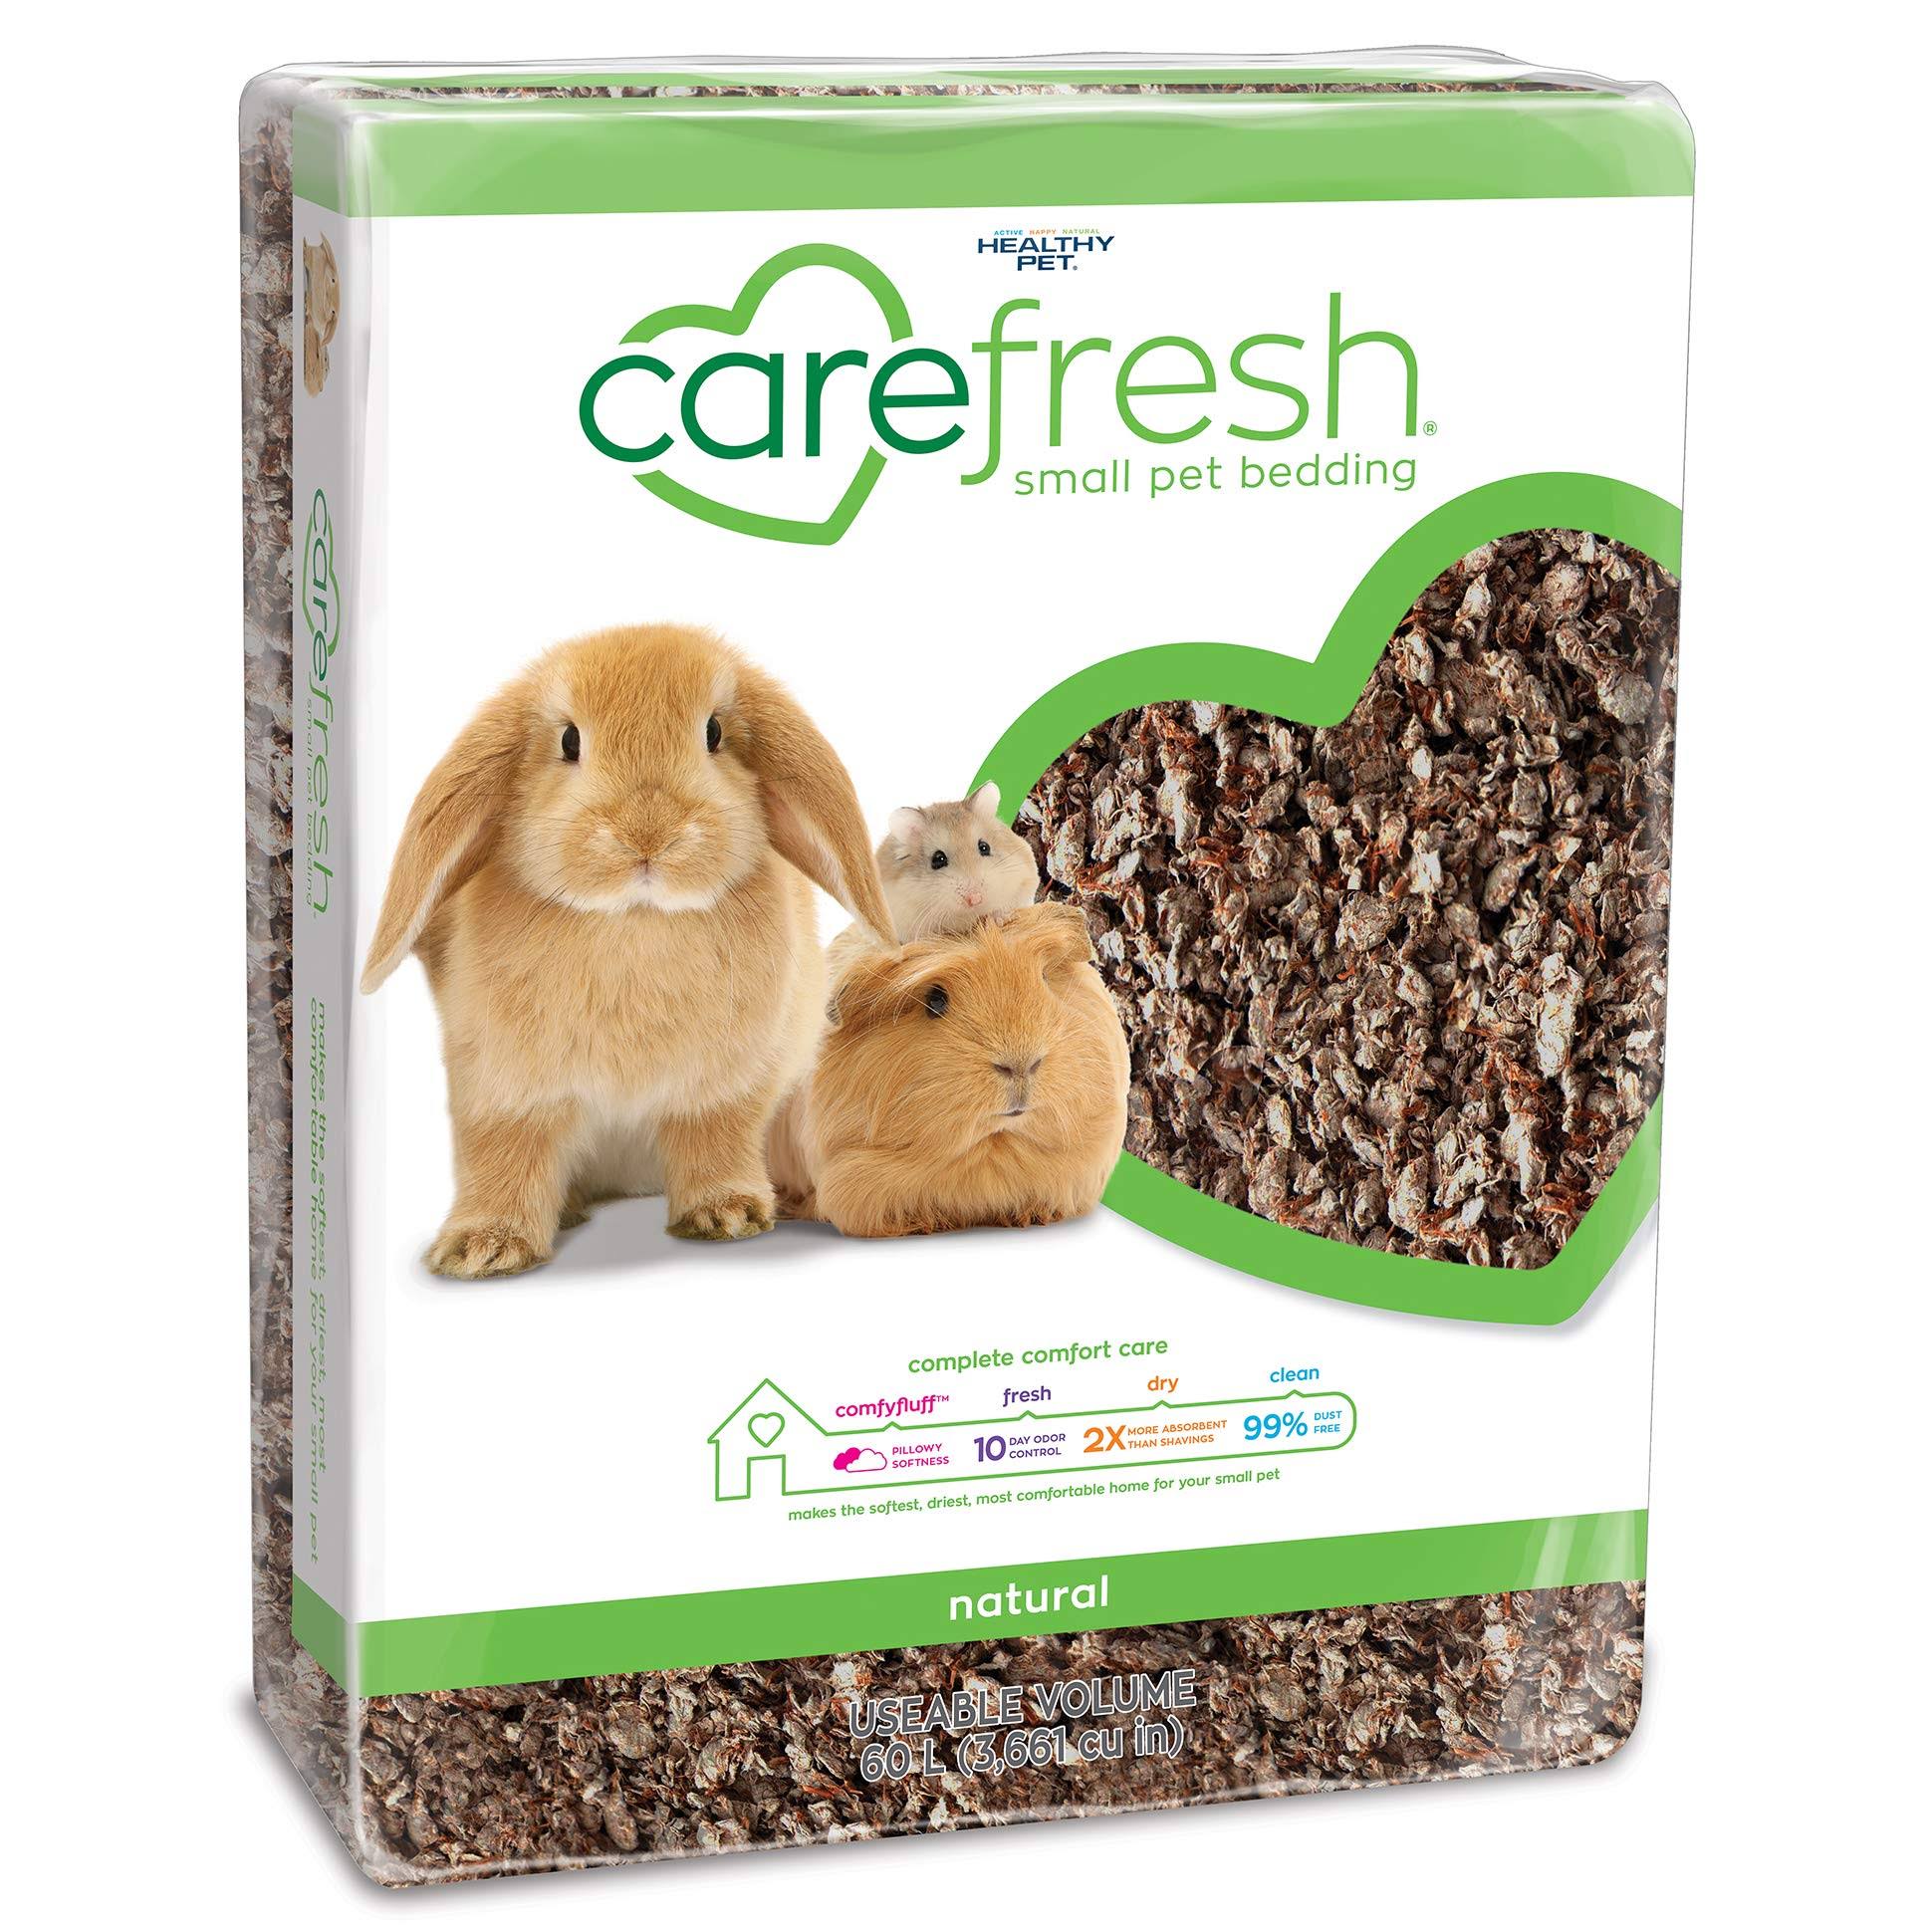 Carefresh Complete Pet Bedding - Natural, 60l